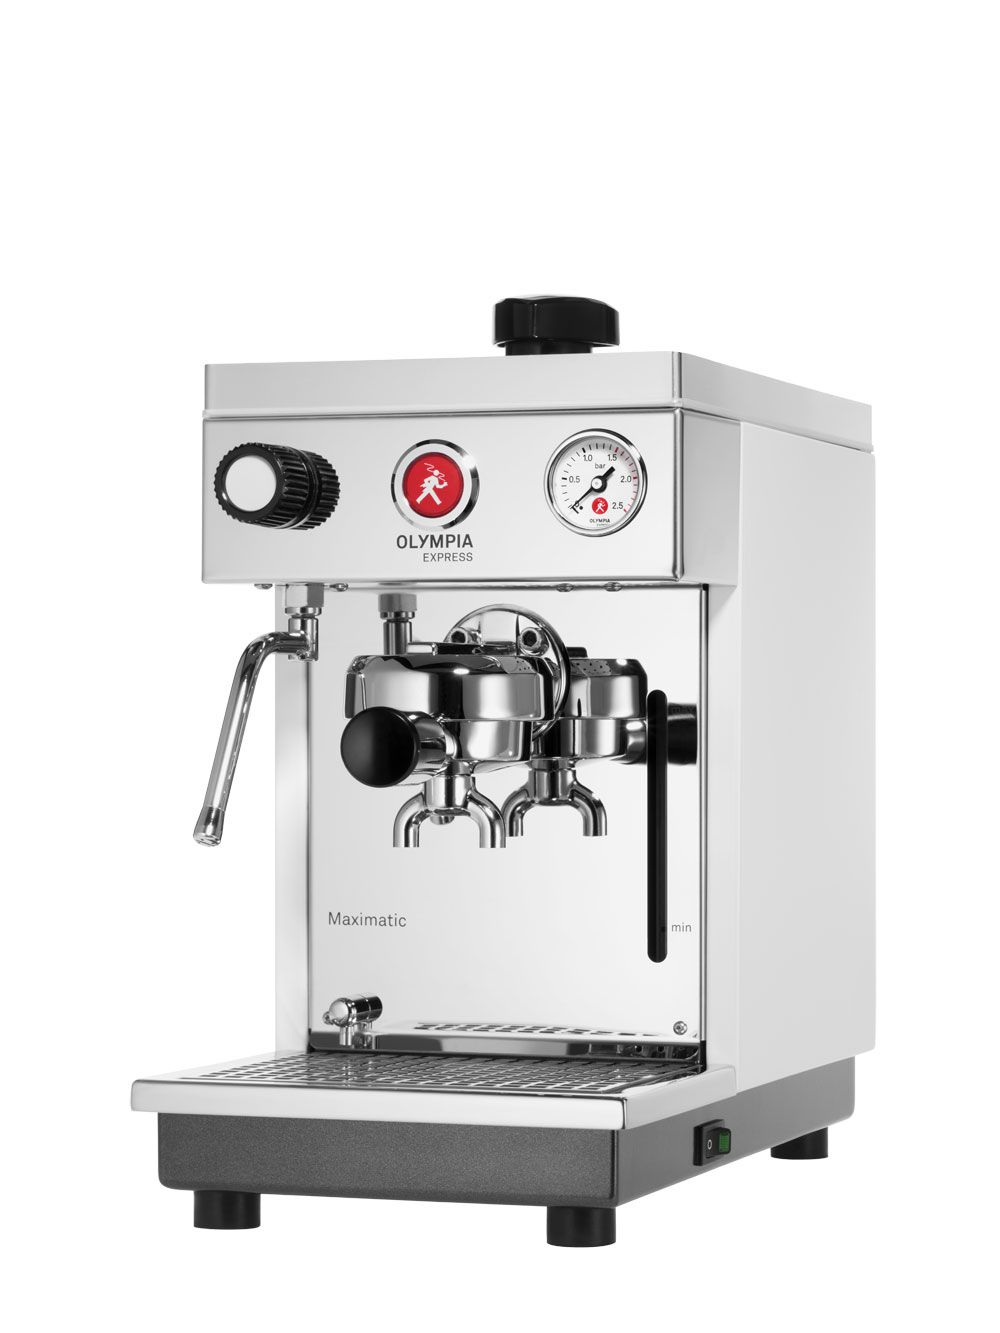 Machine à espresso Olympia Express Maximatic rouge